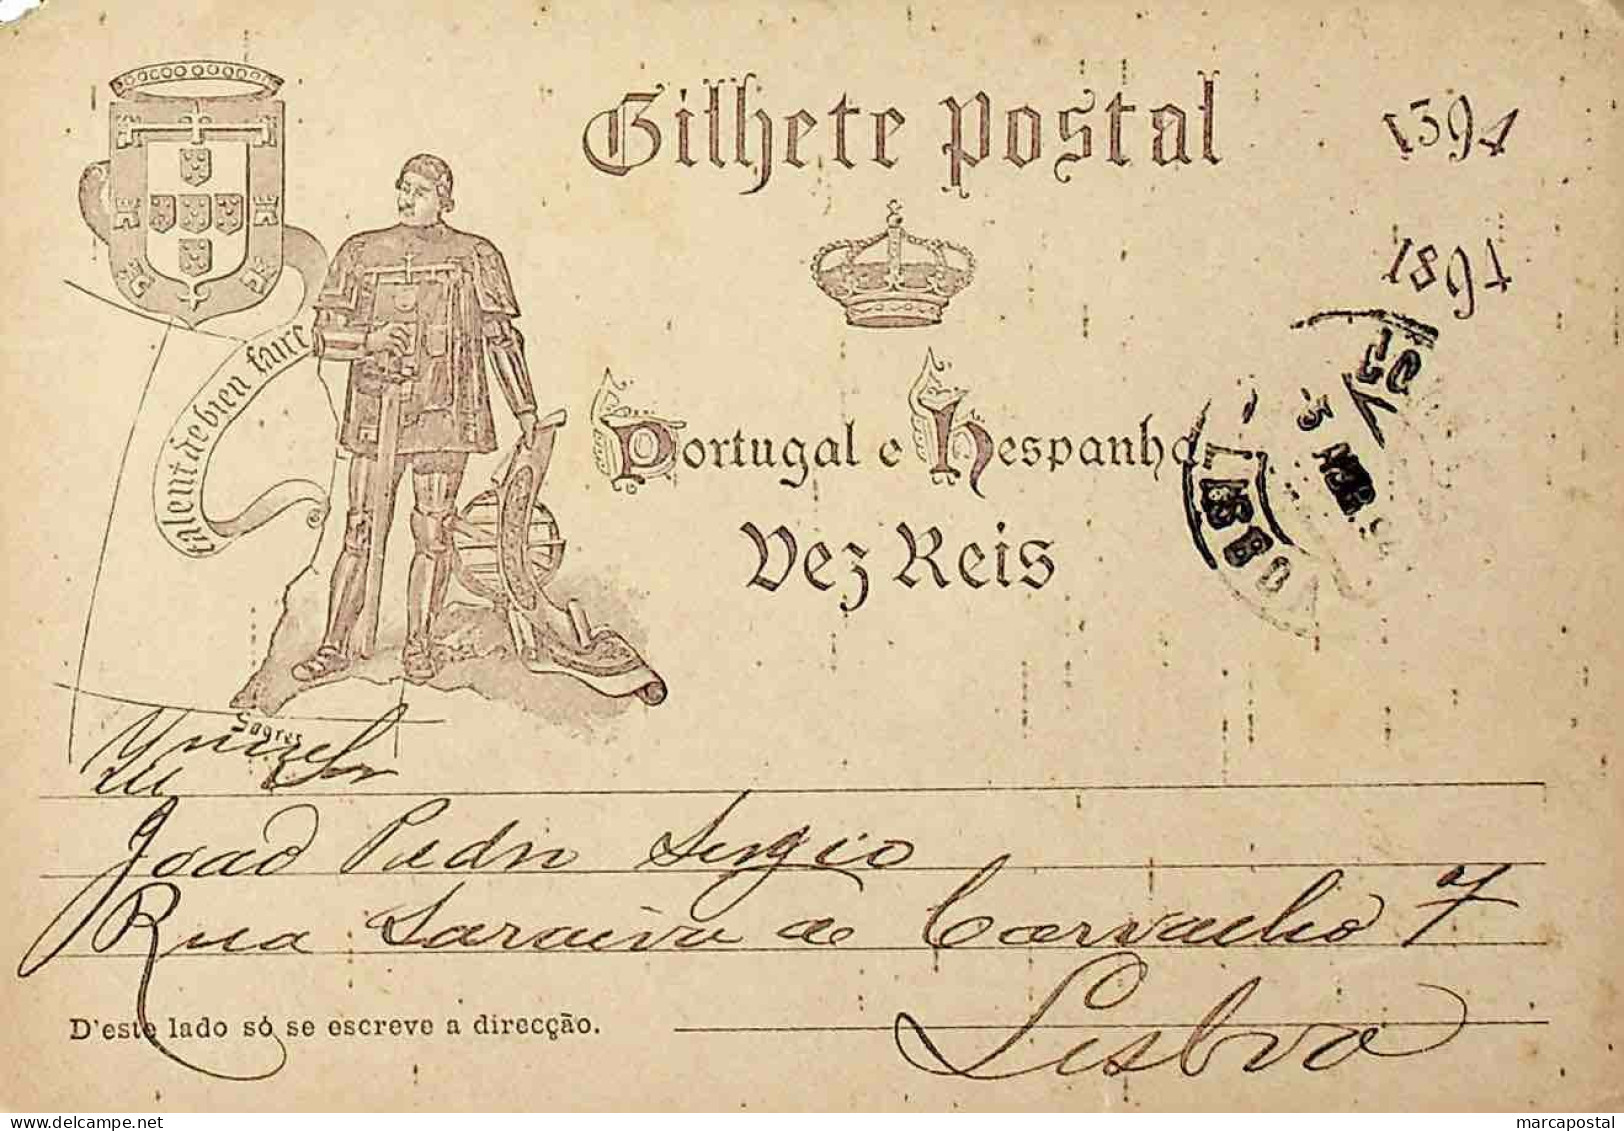 1894 Portugal Bilhete Postal Inteiro V Centenário Do Nascimento Do Infante D. Henrique Circulado Em Lisboa - Entiers Postaux